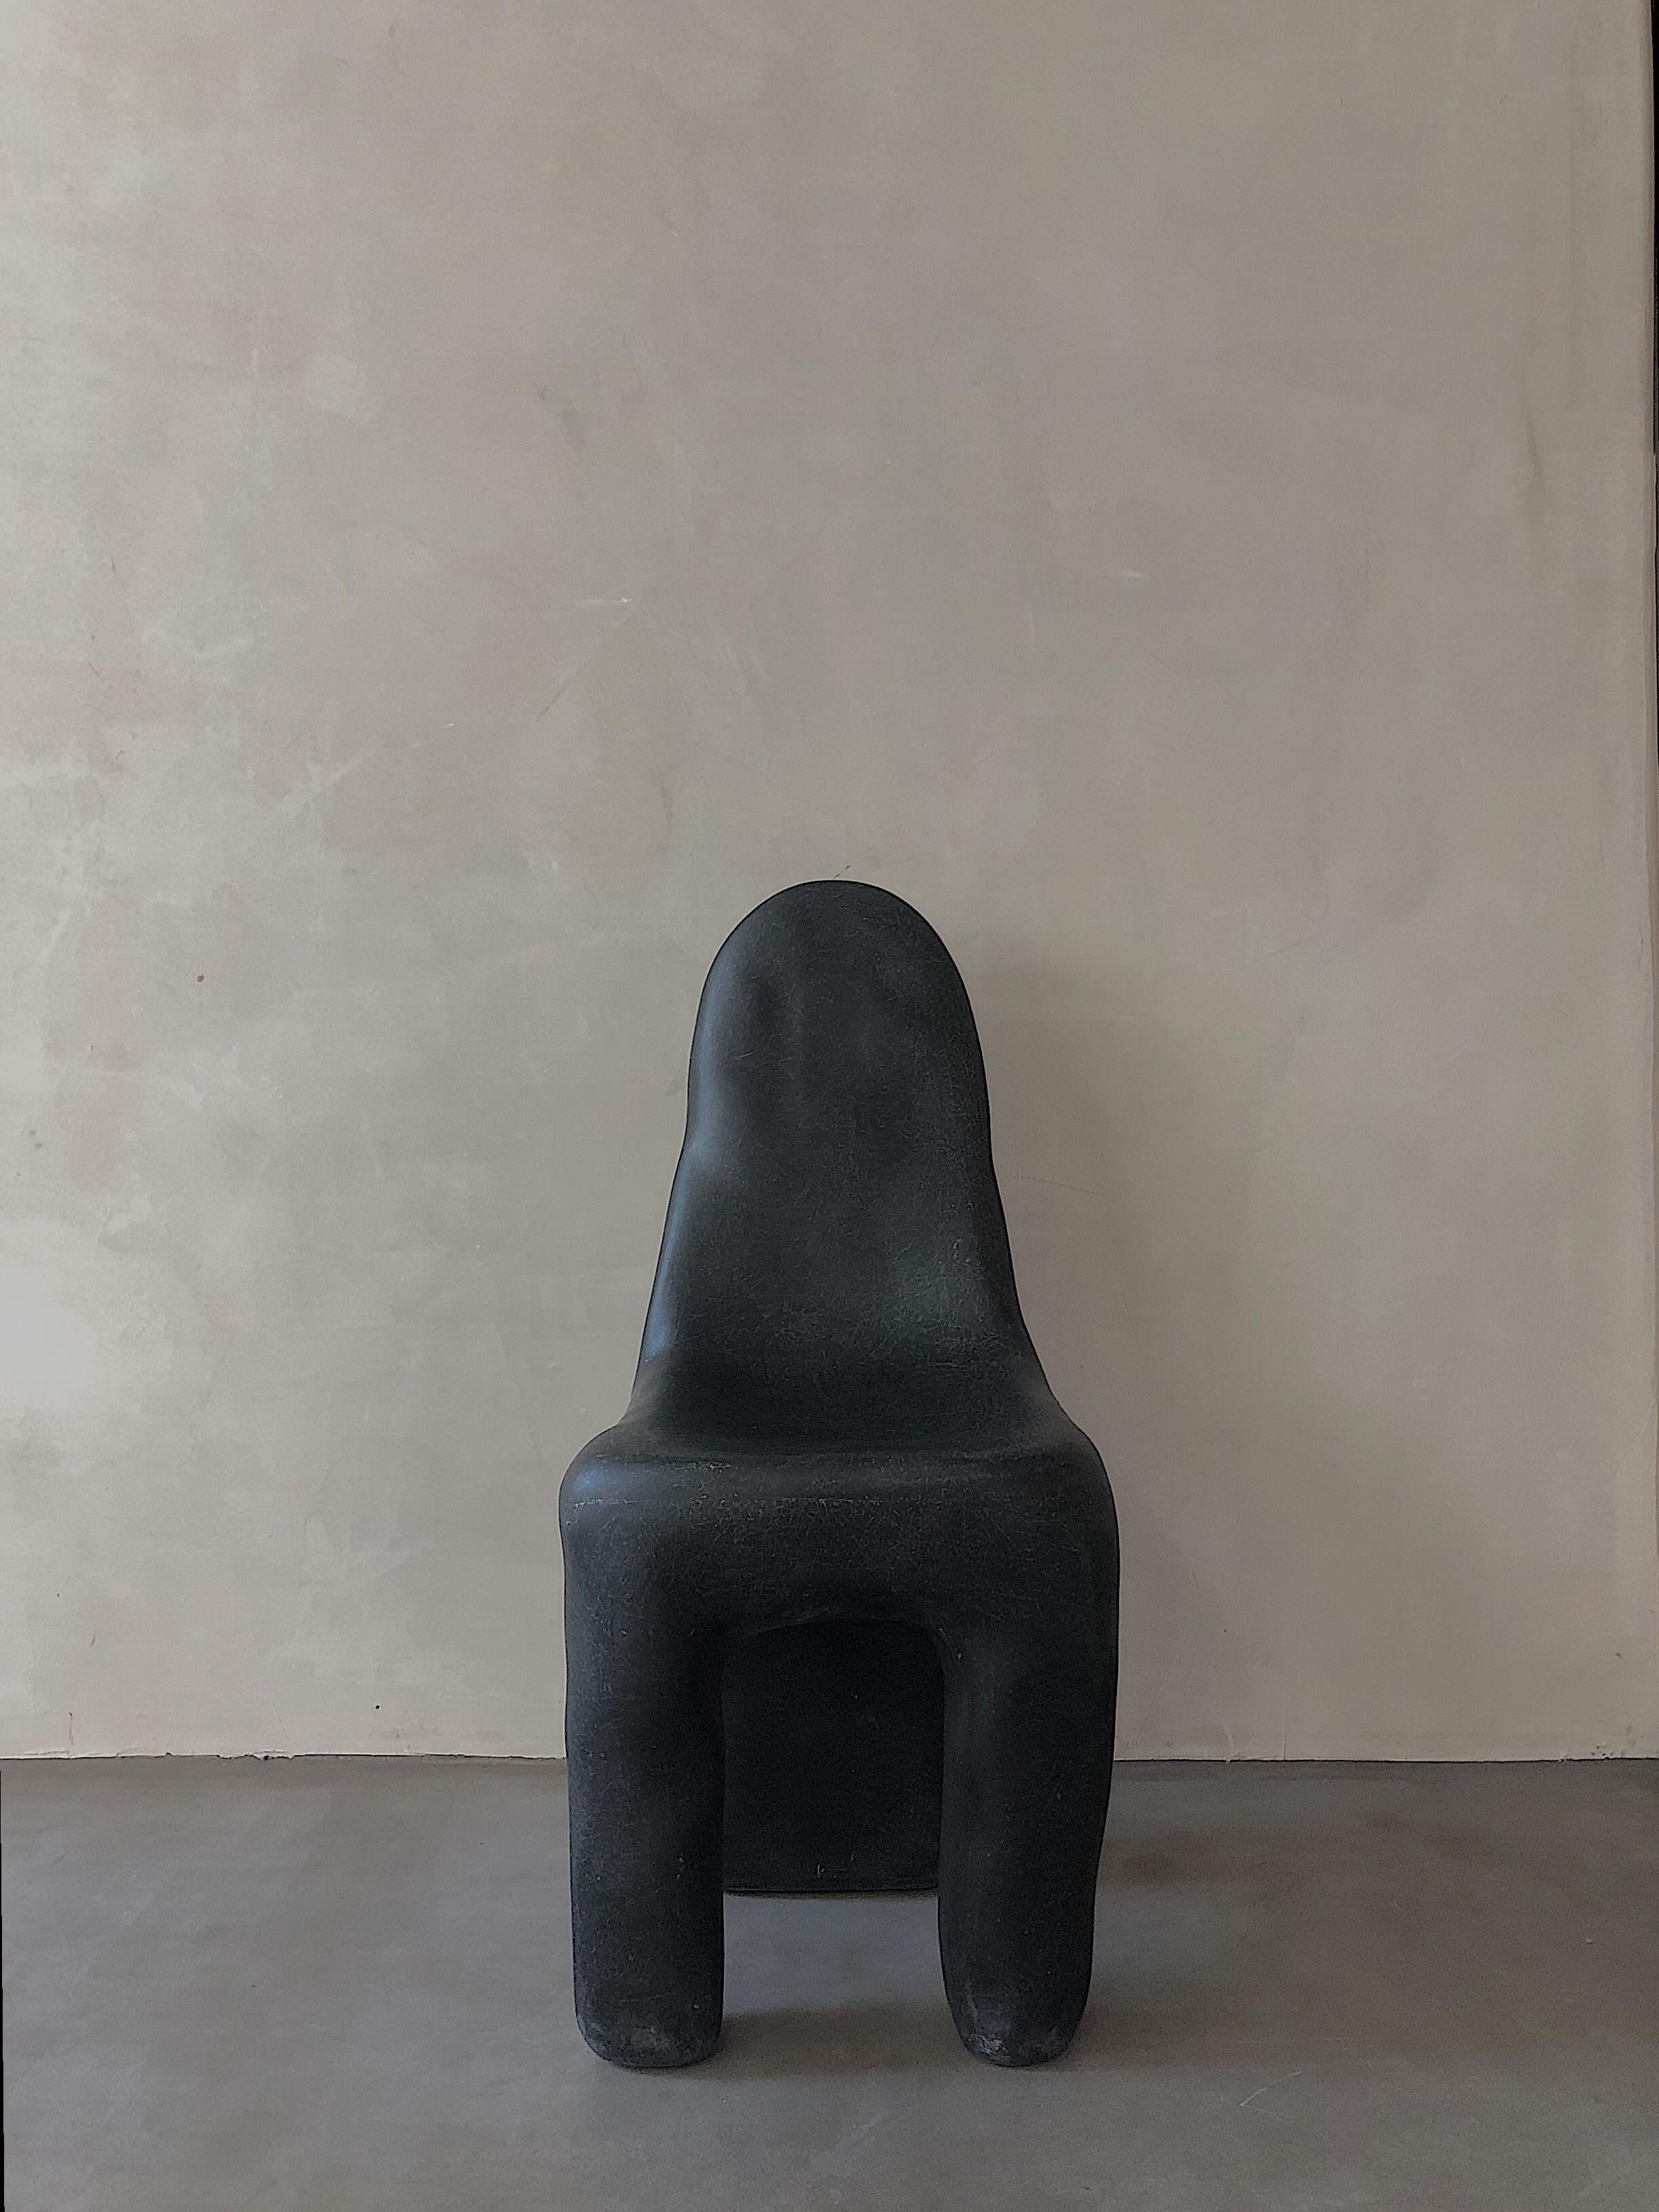 Chaise Playdough noire de kar
Matériaux : PRF.
Dimensions : 37 x 39 x 89 cm : 37 x 39 x 89 cm.

Doux comme le coton, avec un fort contraste avec la texture dure, l'aspect unique attire l'attention, quel que soit l'endroit où il est placé.

Kar- est